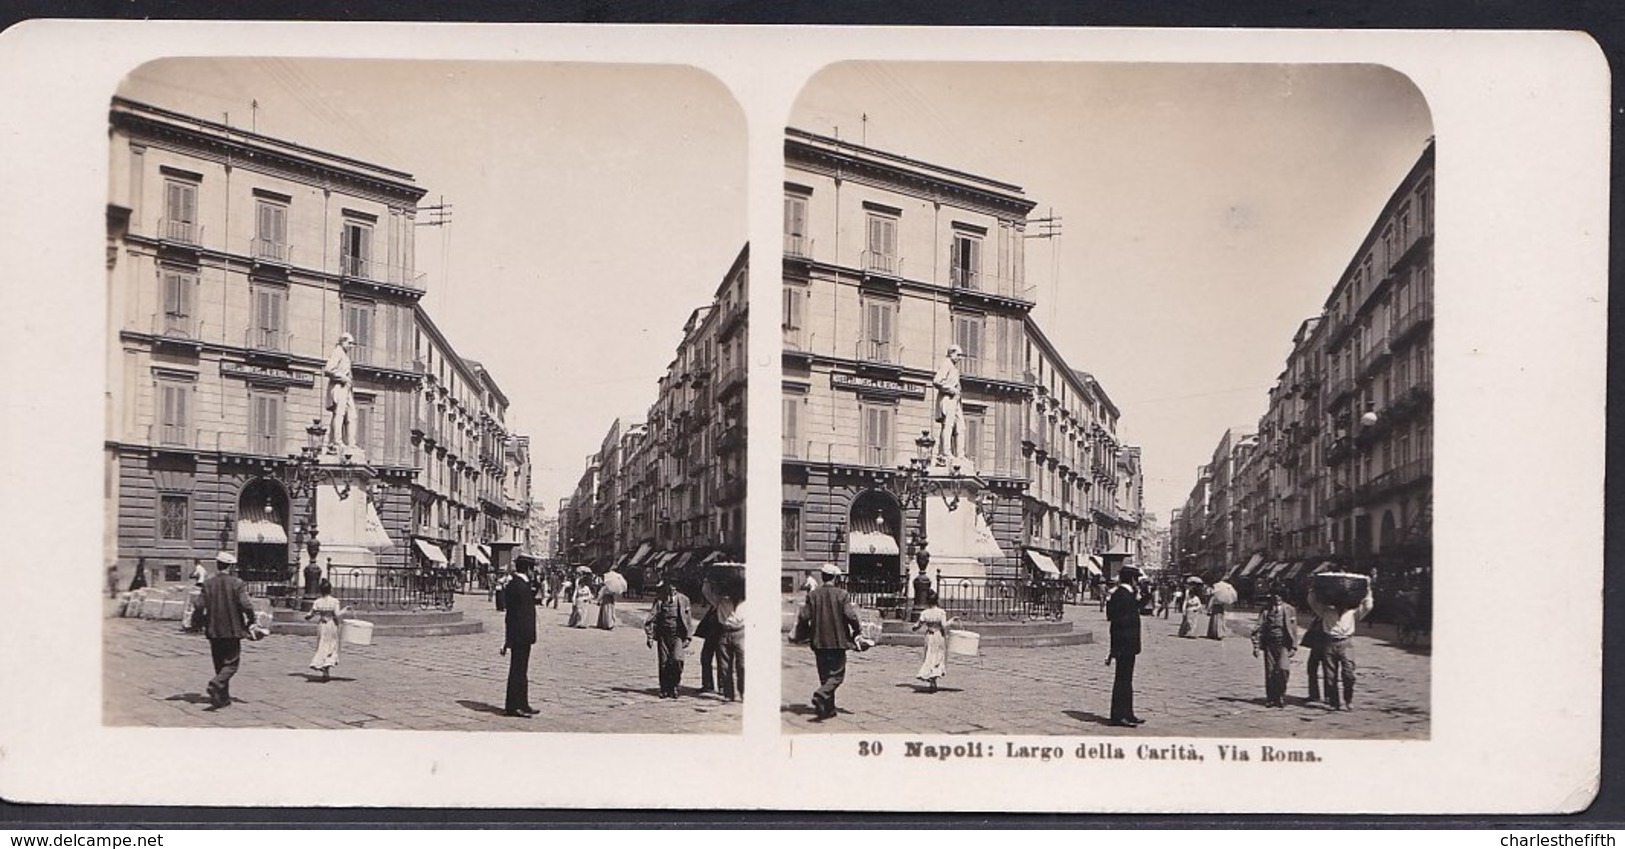 1906 VECCHIA FOTO STEREO ITALIA - CAMPANIA - ** NAPOLI ; LARGO DELLA CARITA - VIA ROMA ** RARE - Fotos Estereoscópicas